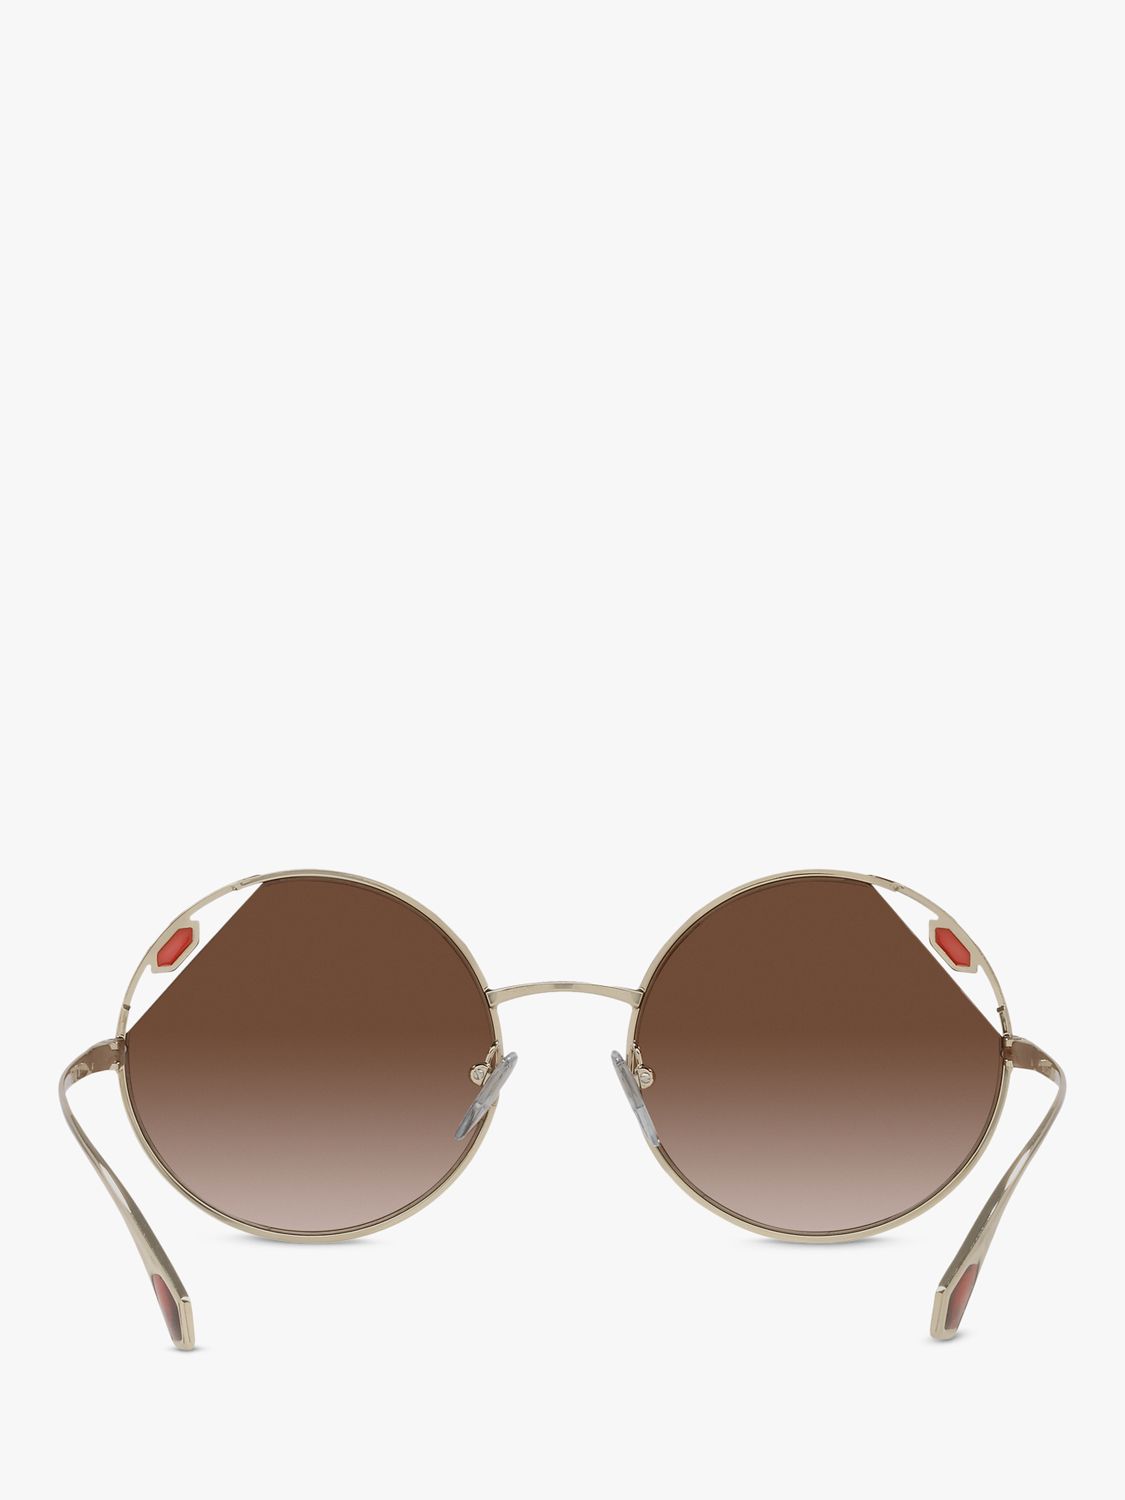 Buy BVLGARI BV6159 Women's Round Sunglasses Online at johnlewis.com